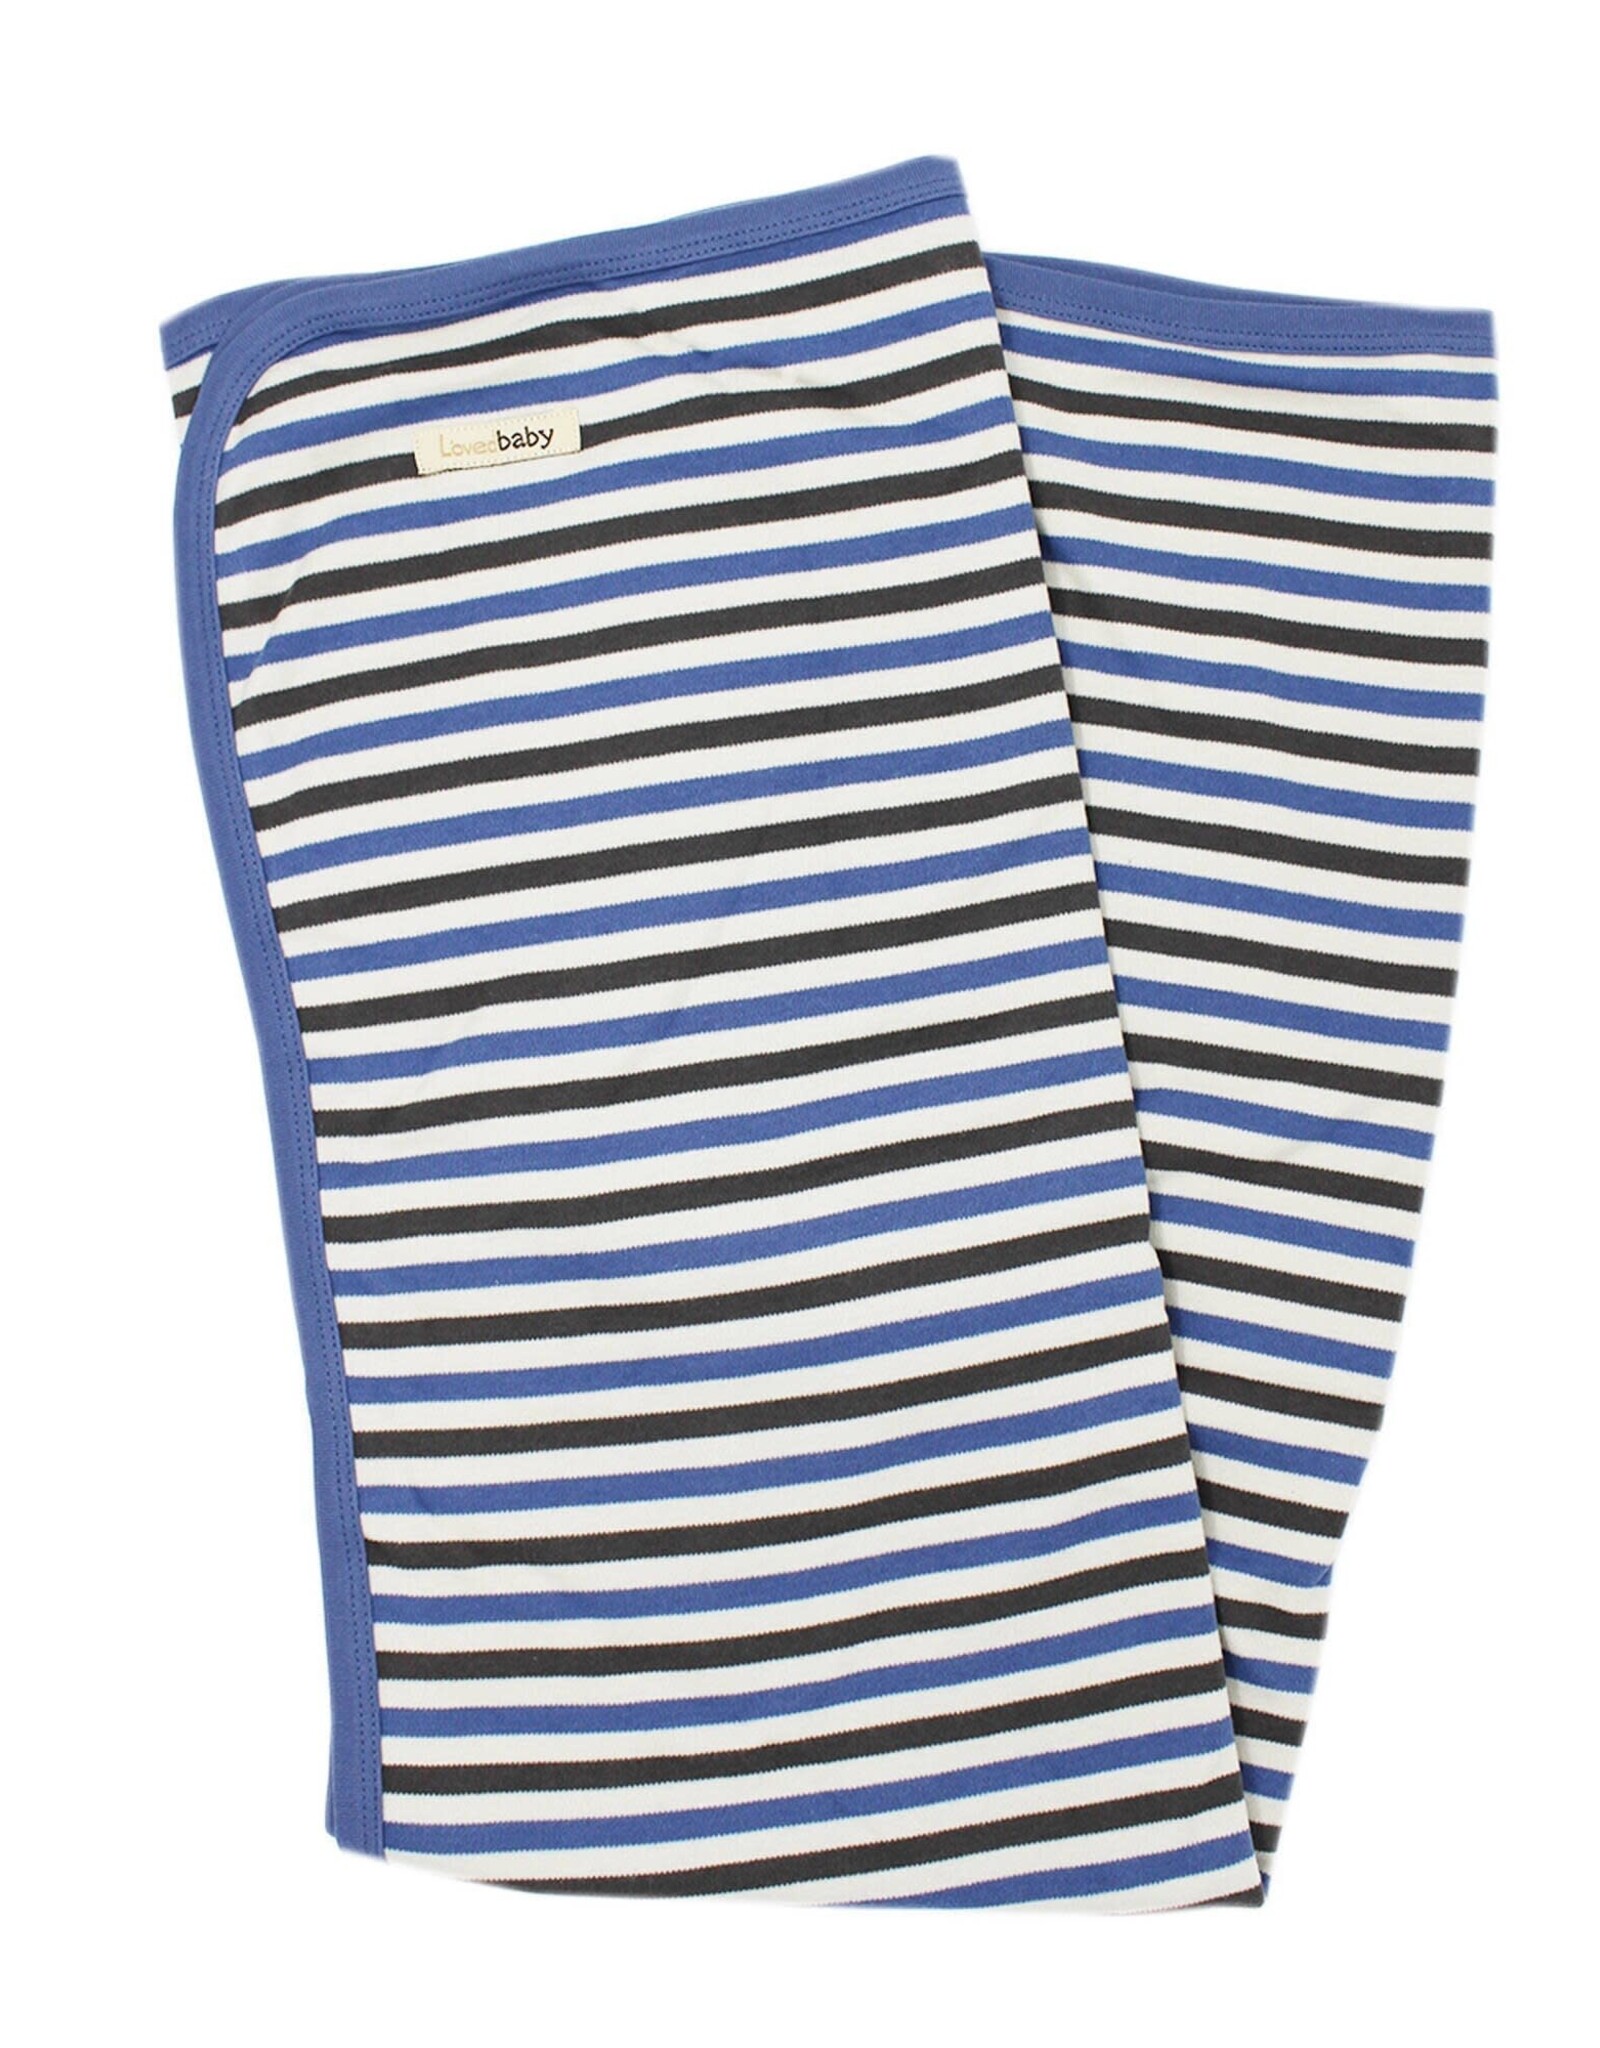 L'oved Baby Swaddle Blanket Slate Stripe